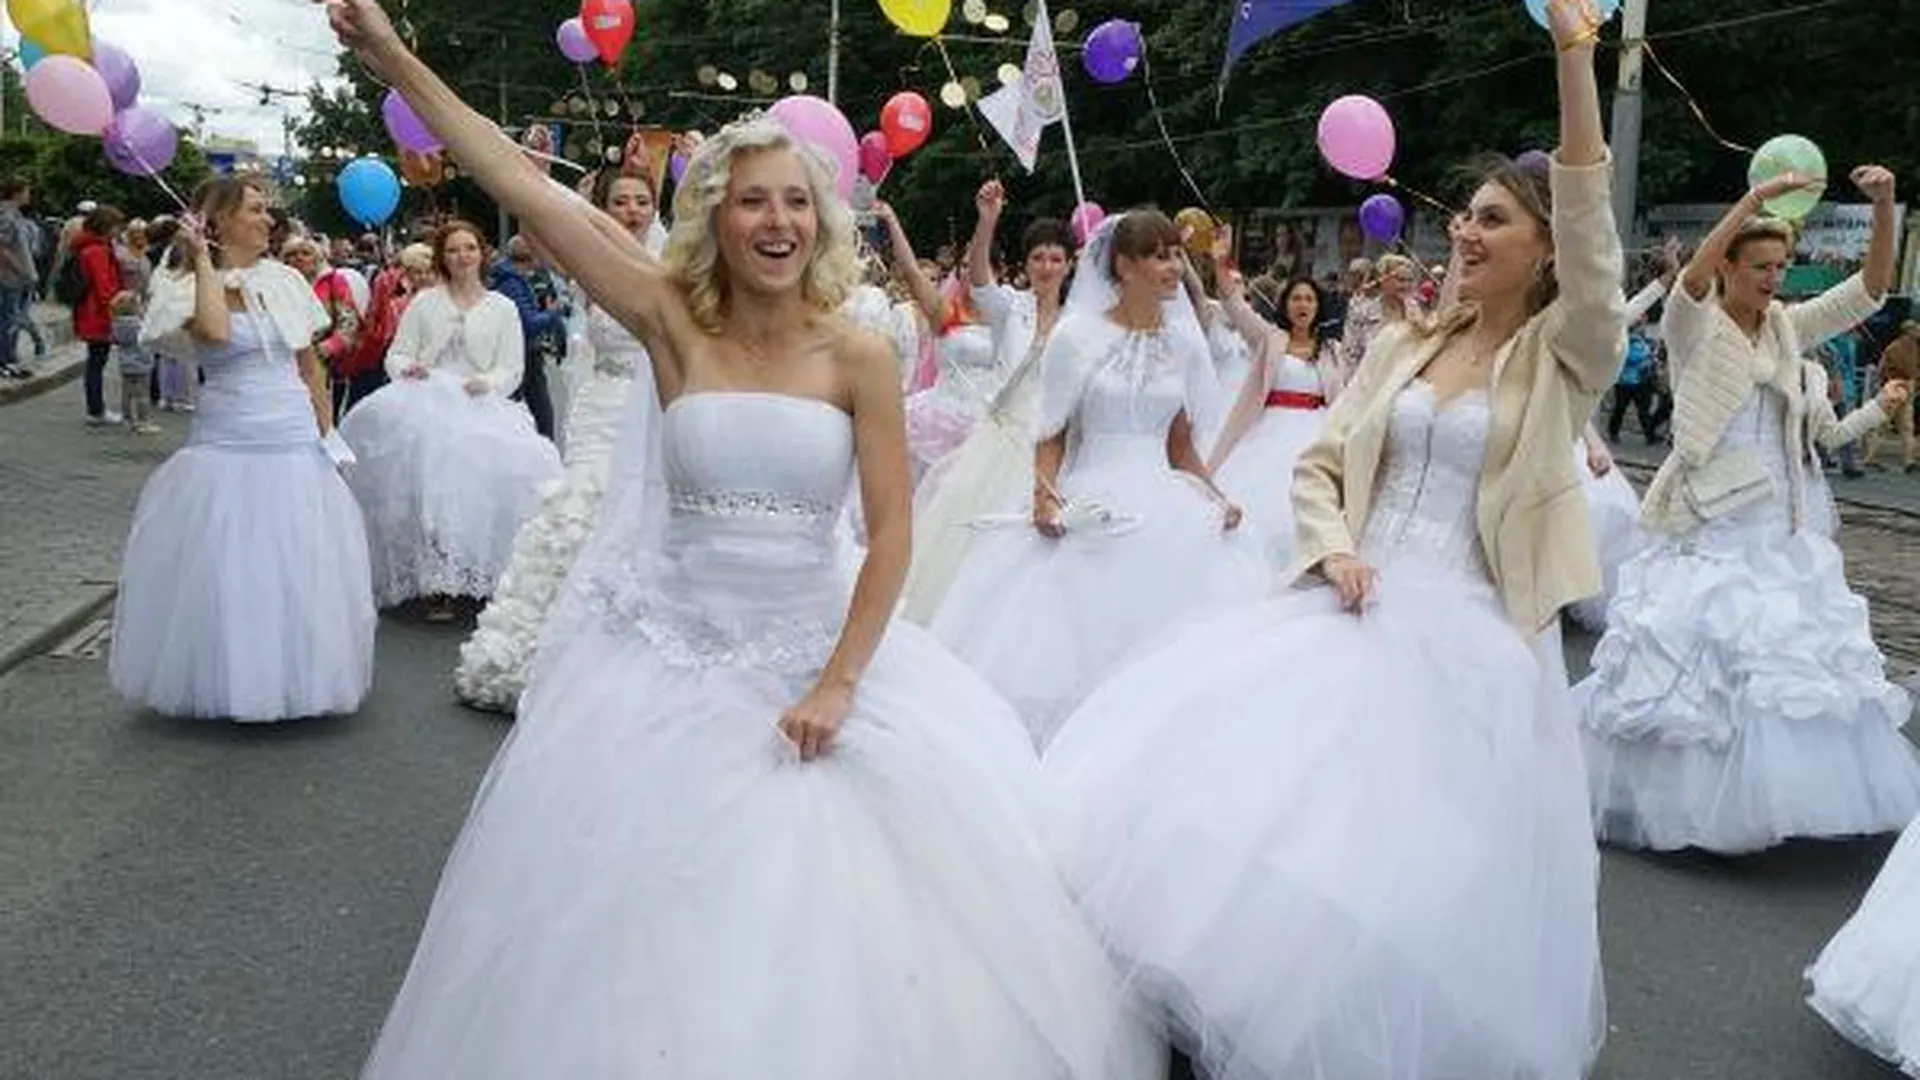 Областной фестиваль невест пройдет в Подольске в мае